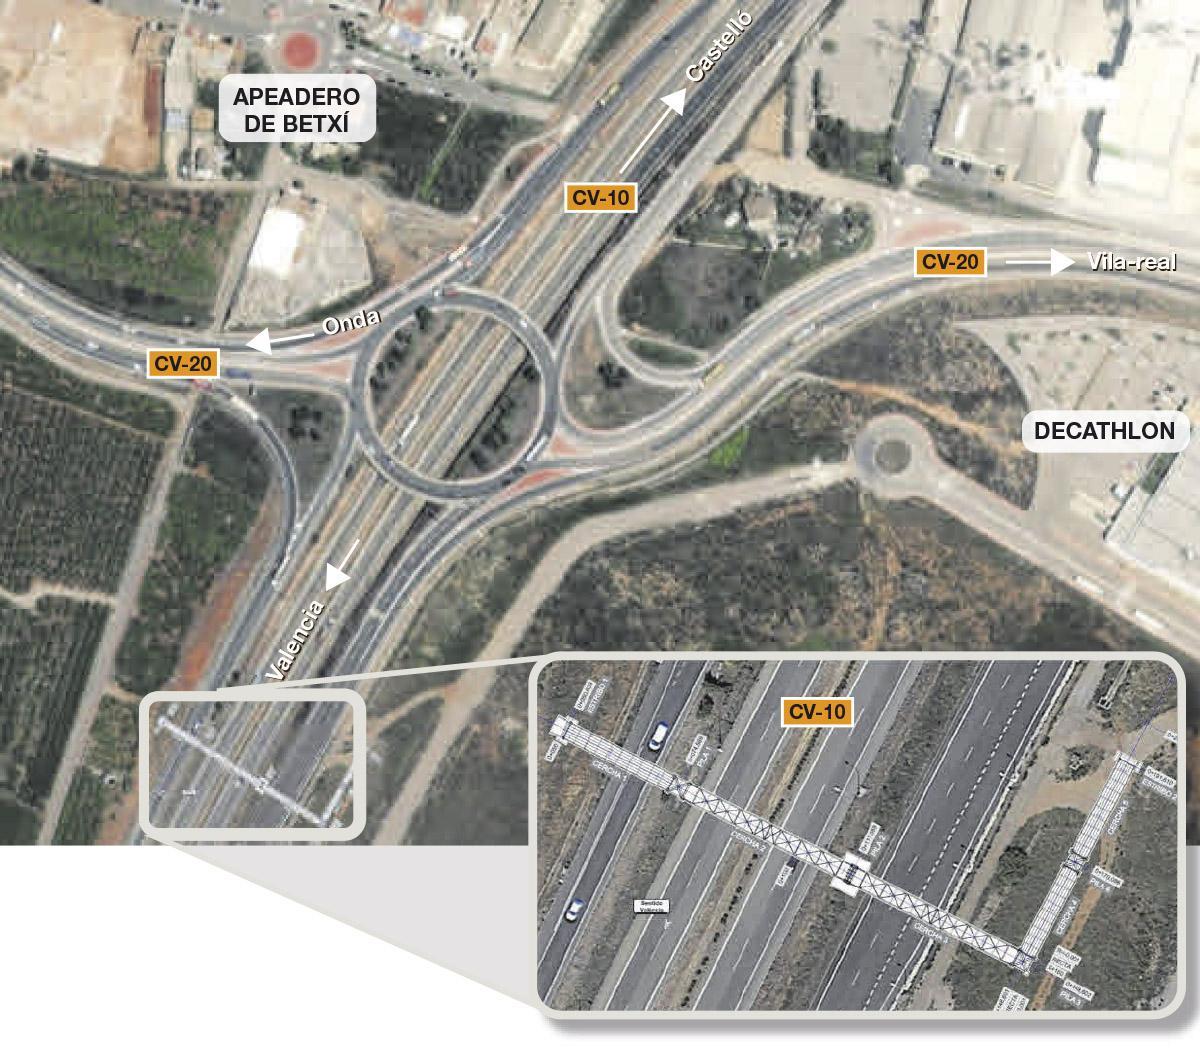 La zona donde se proyecta la pasarela metálica está situada en término de Onda, en la zona sur del enlace del apeadero de Betxí de la CV-10 con la CV-20. Los trabajos empezarán después del verano.